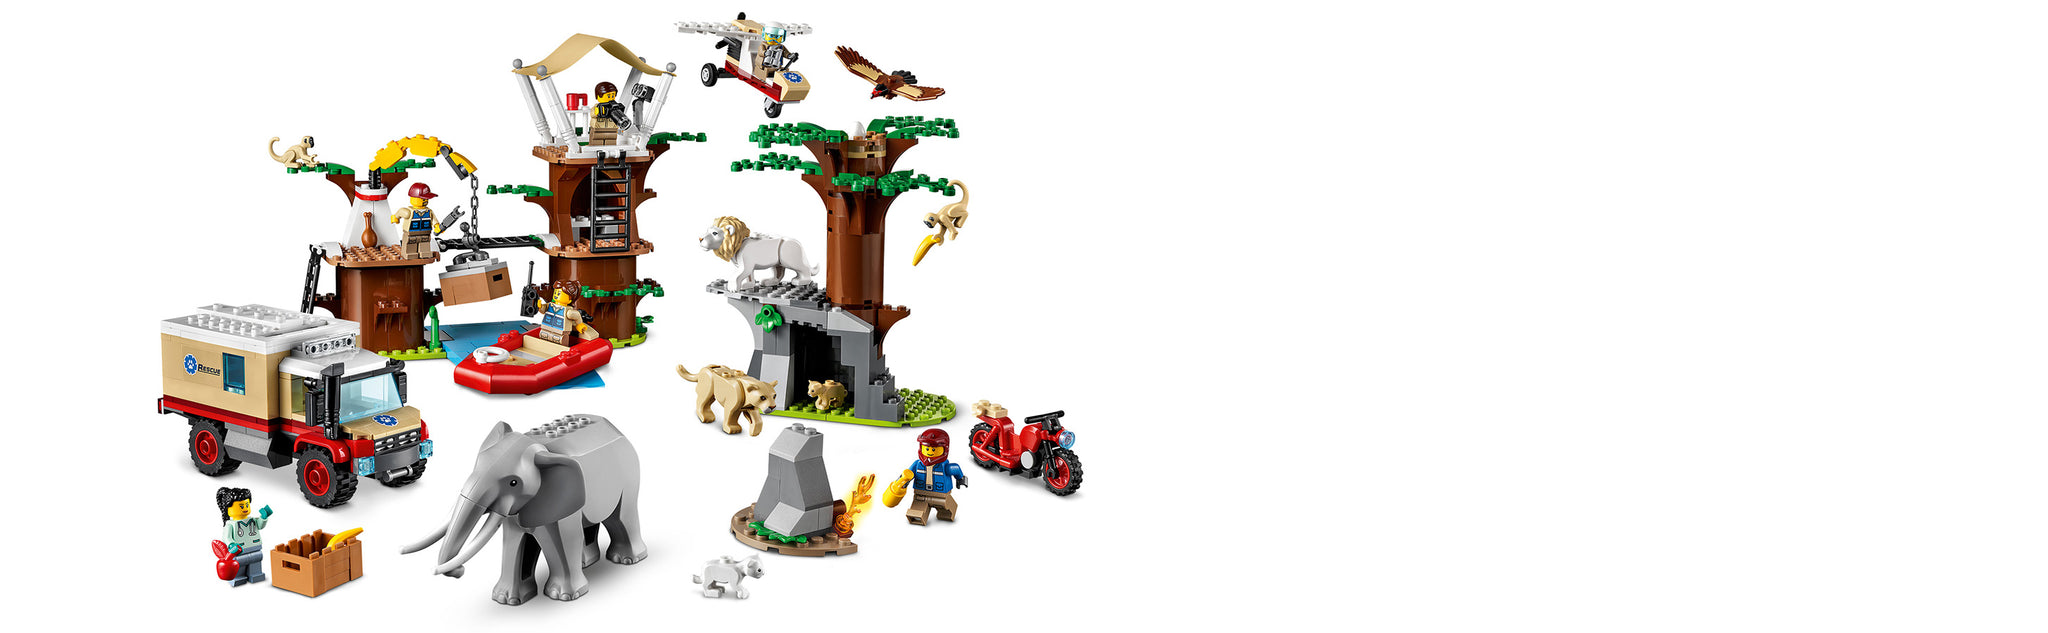 LEGO 60307 Wildlife Rescue Camp im Dschungel